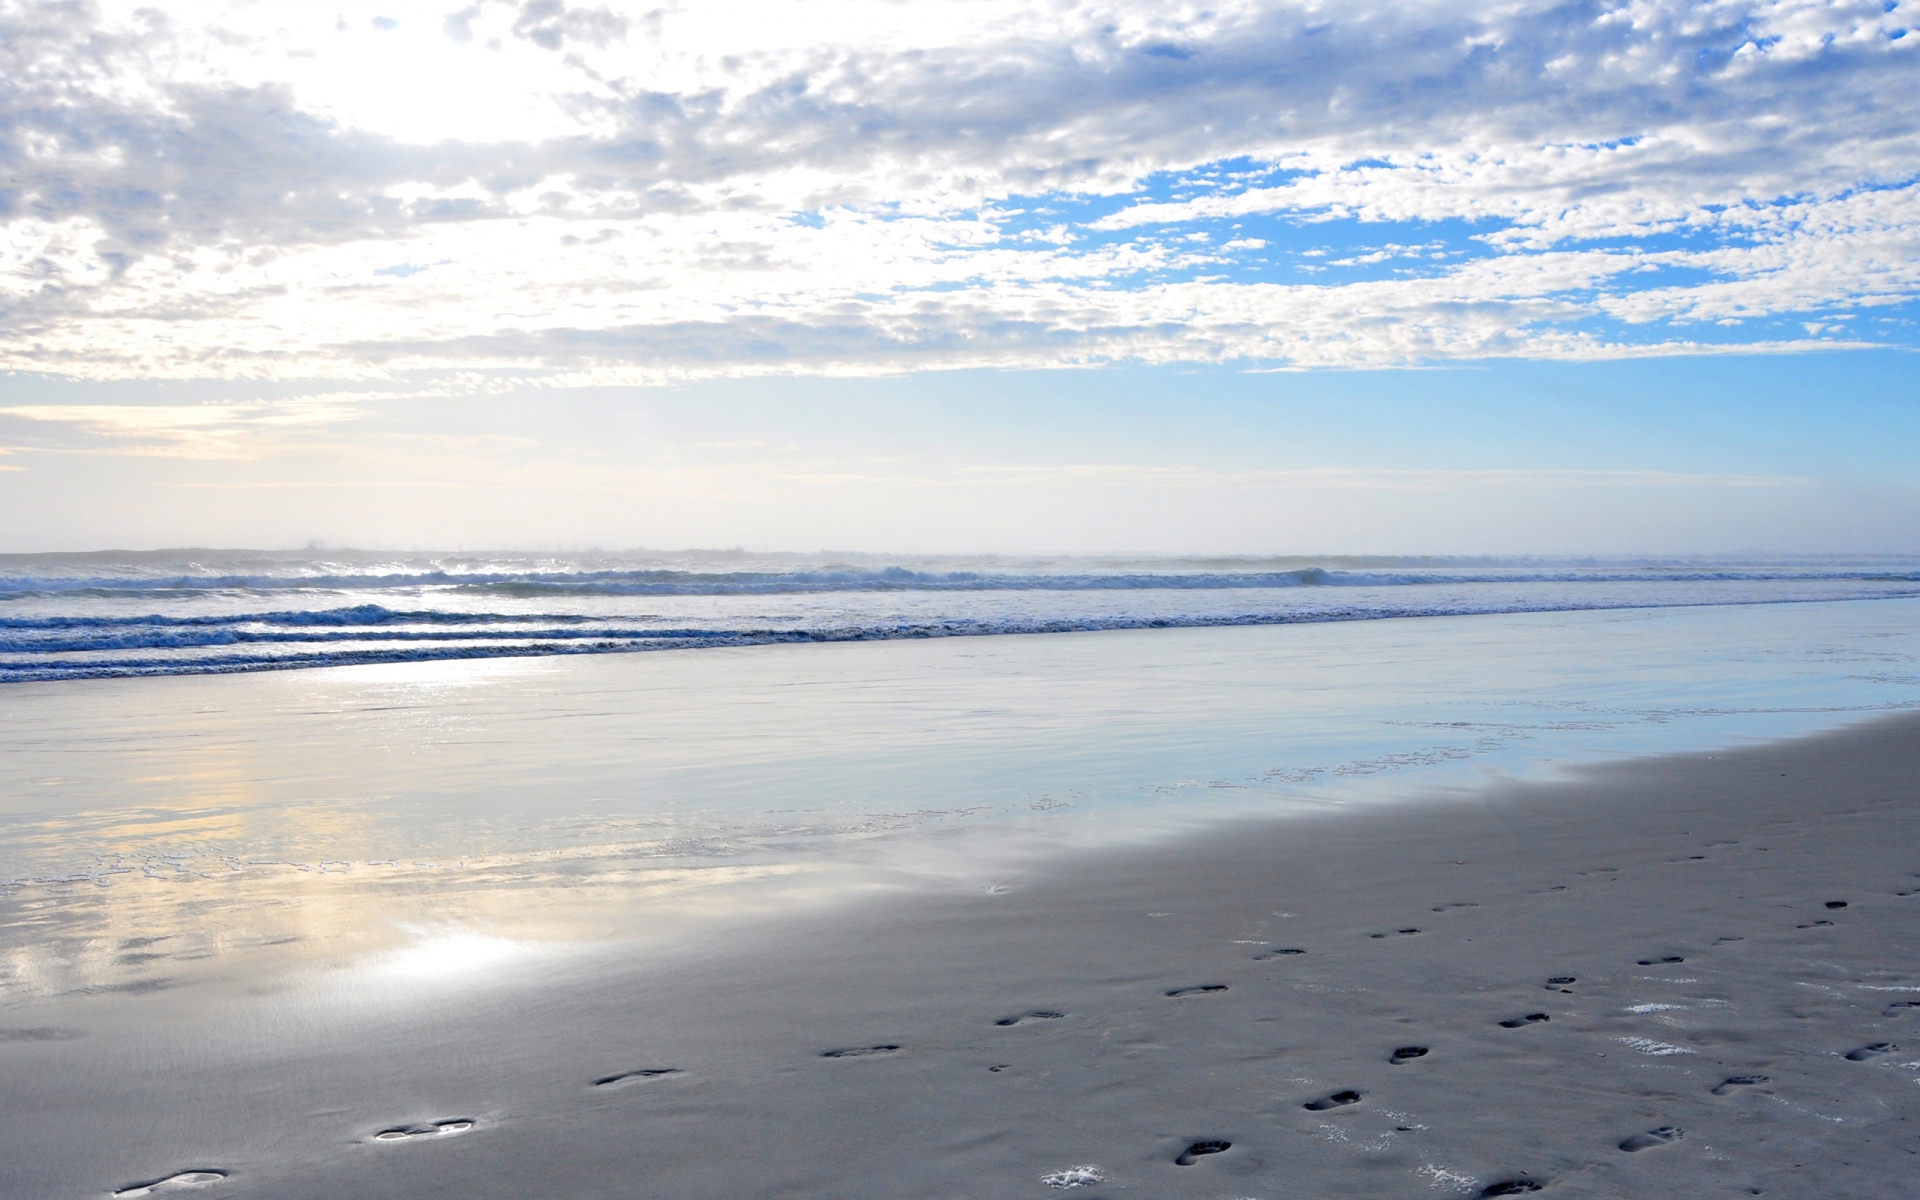 Картинки Песок, следы, пляж, океан, волны, побережье, небо, облака, лазурь, просвет фото и обои на рабочий стол